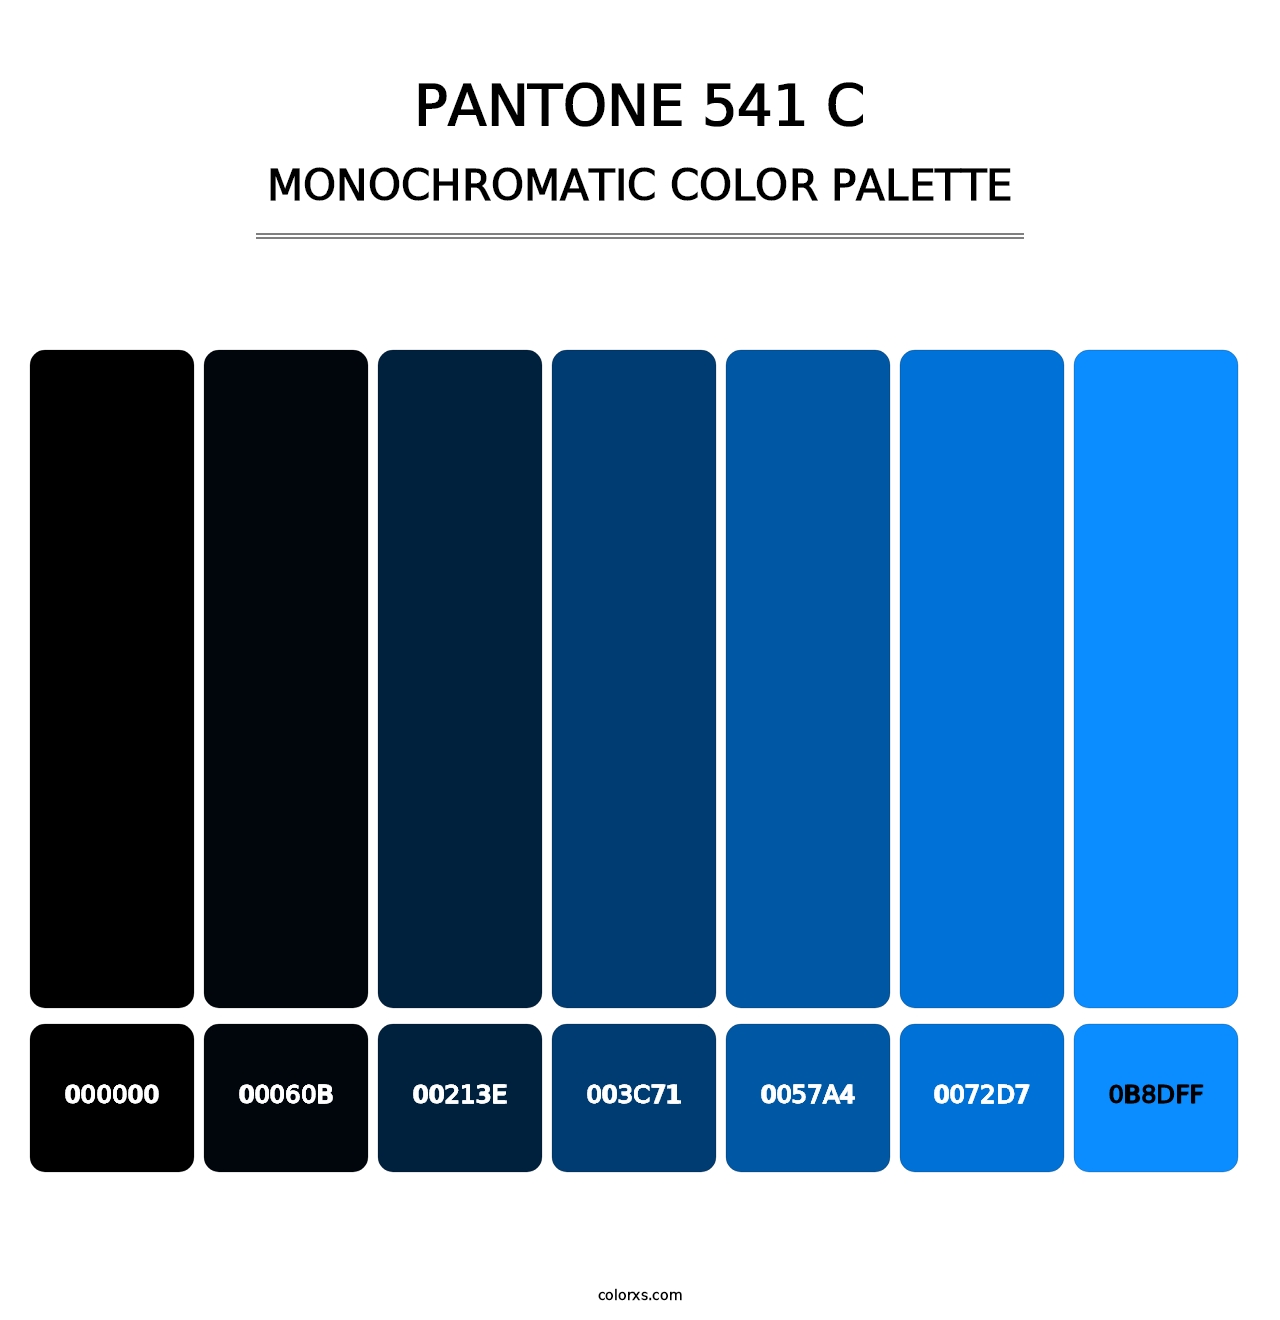 PANTONE 541 C - Monochromatic Color Palette